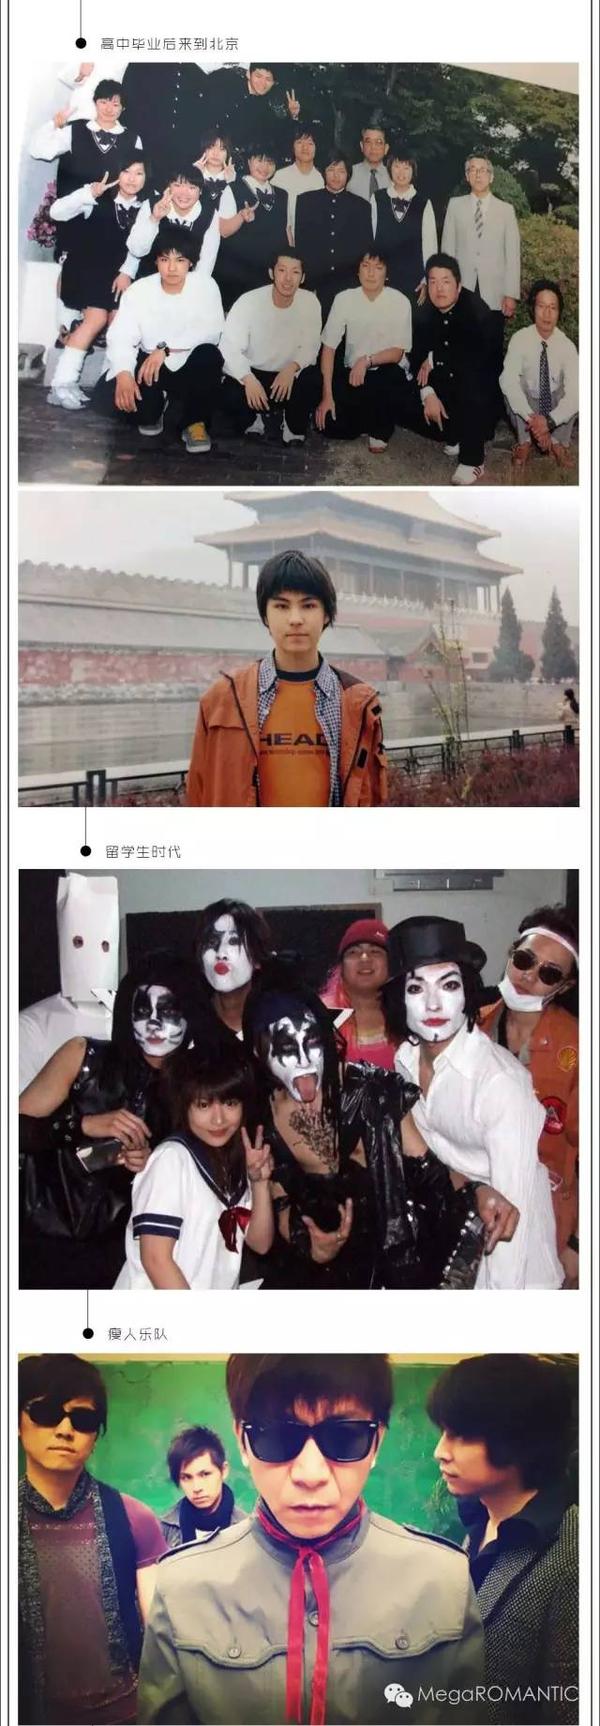 日本人在中国 | 摇滚朋克与平凡力量——专访新裤子乐队鼓手hayato